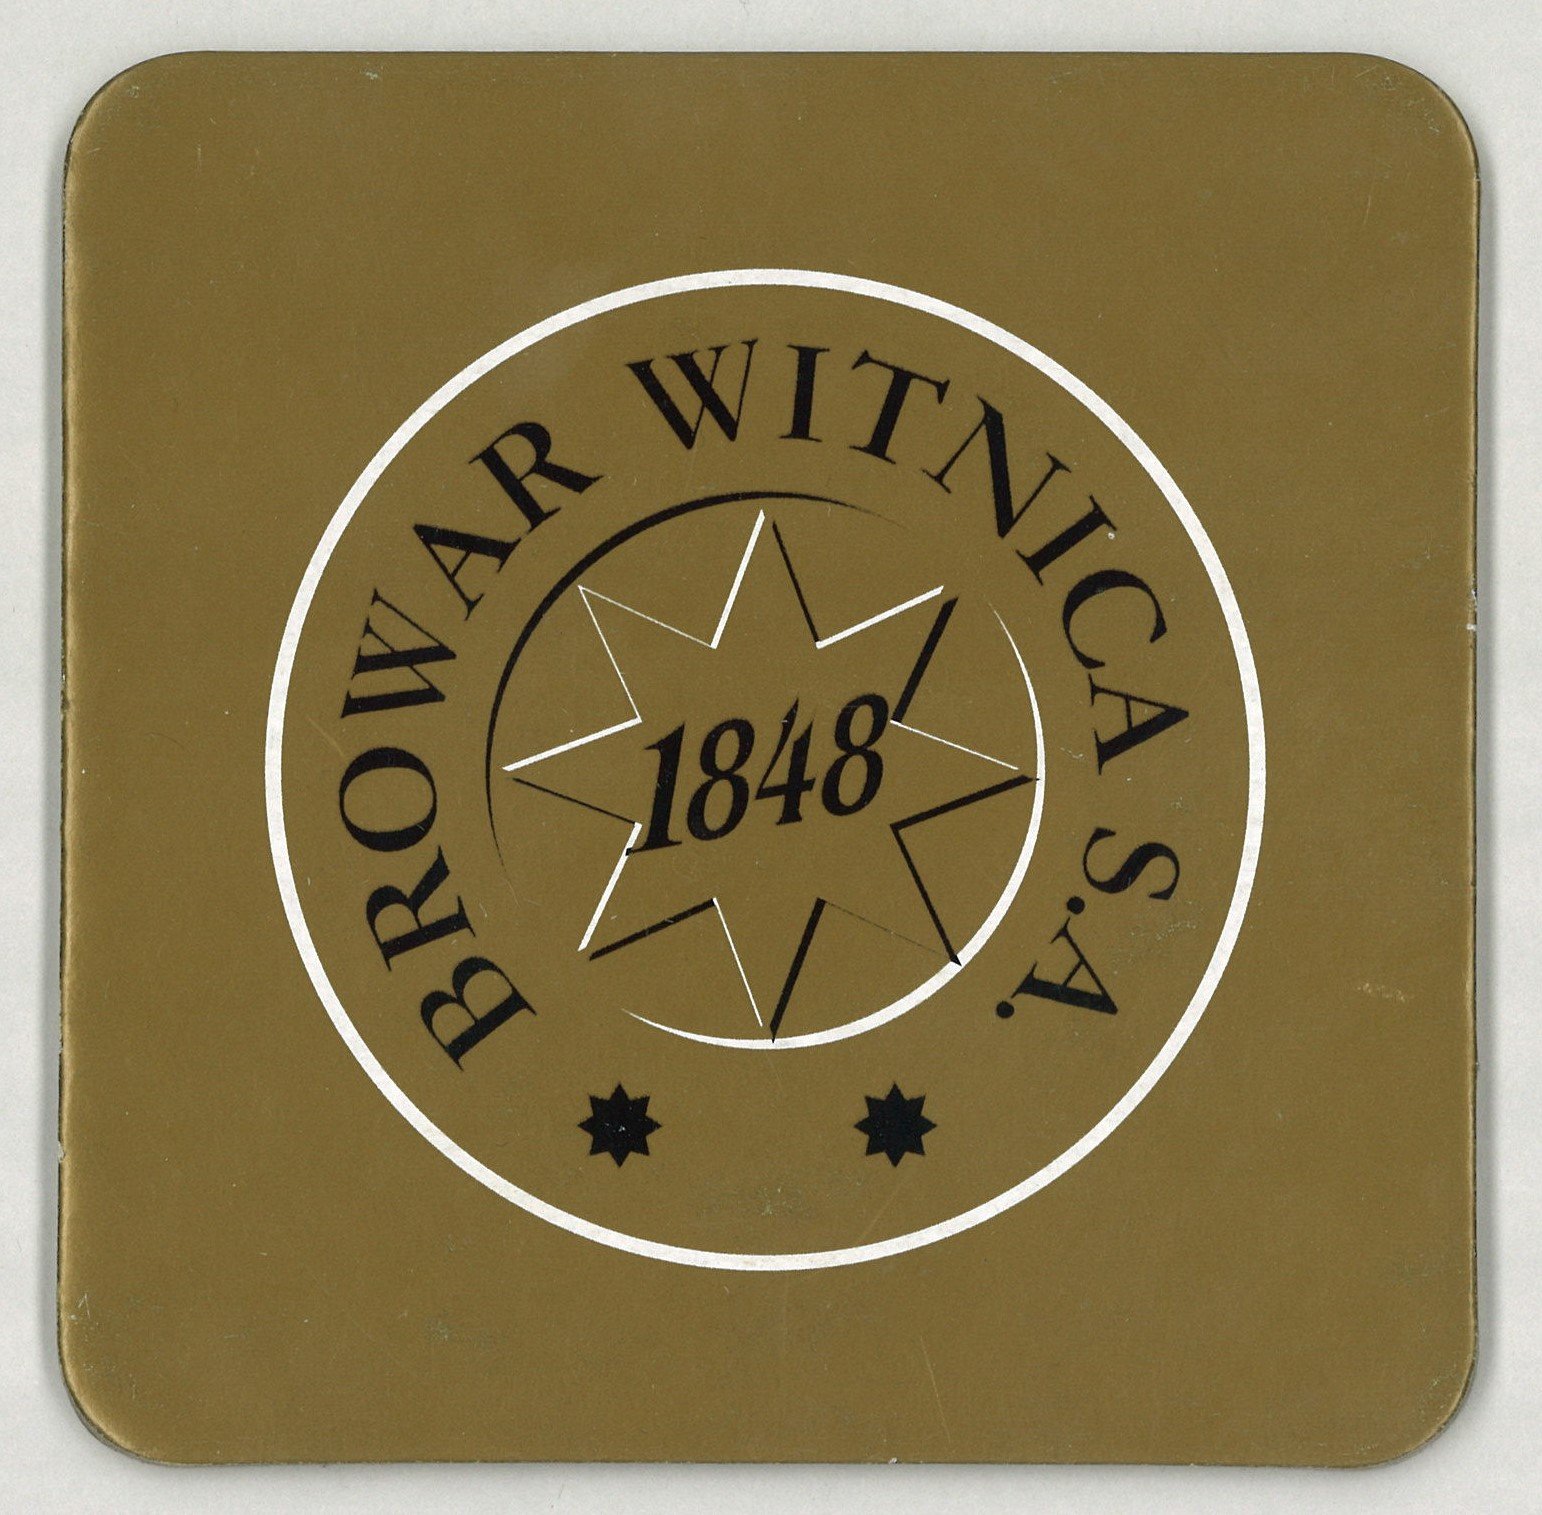 Vietz / Witnica: Browar Witnica S.A. (Landesgeschichtliche Vereinigung für die Mark Brandenburg e.V., Archiv CC BY)